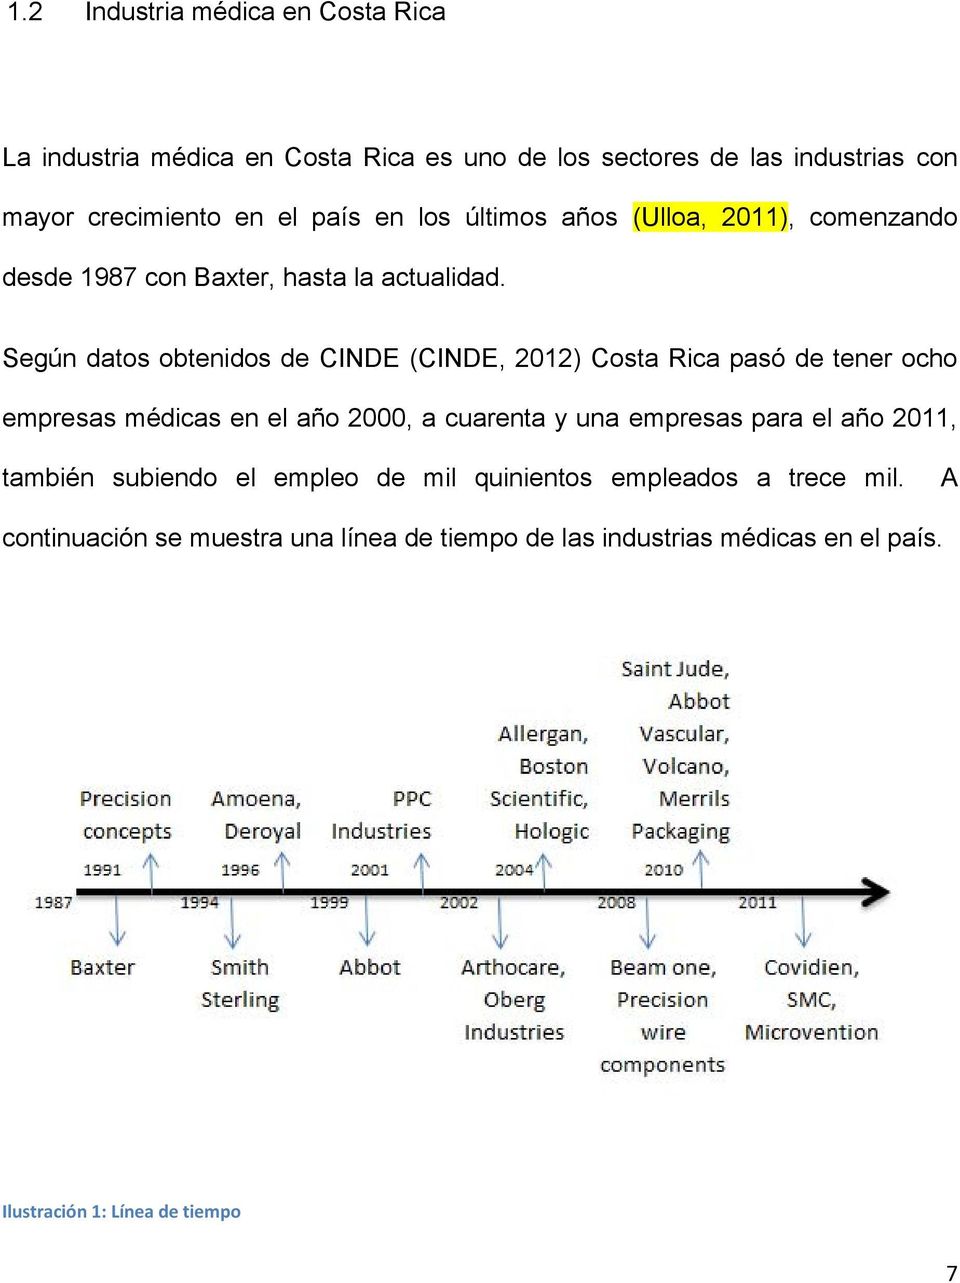 Según datos obtenidos de CINDE (CINDE, 2012) Costa Rica pasó de tener ocho empresas médicas en el año 2000, a cuarenta y una empresas para el